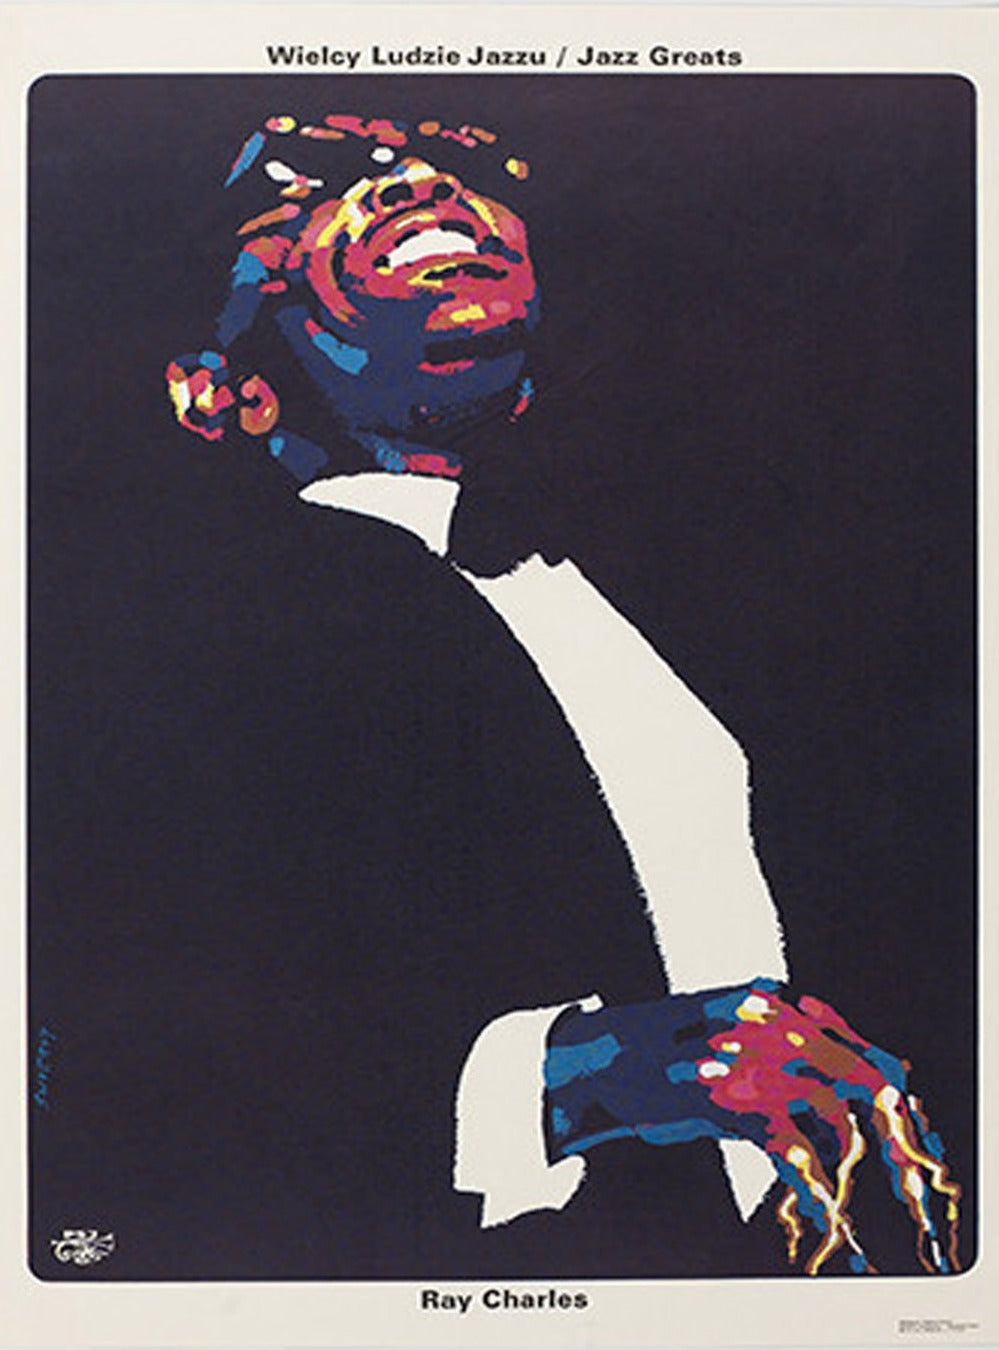 Ray Charles - Jazz Greats